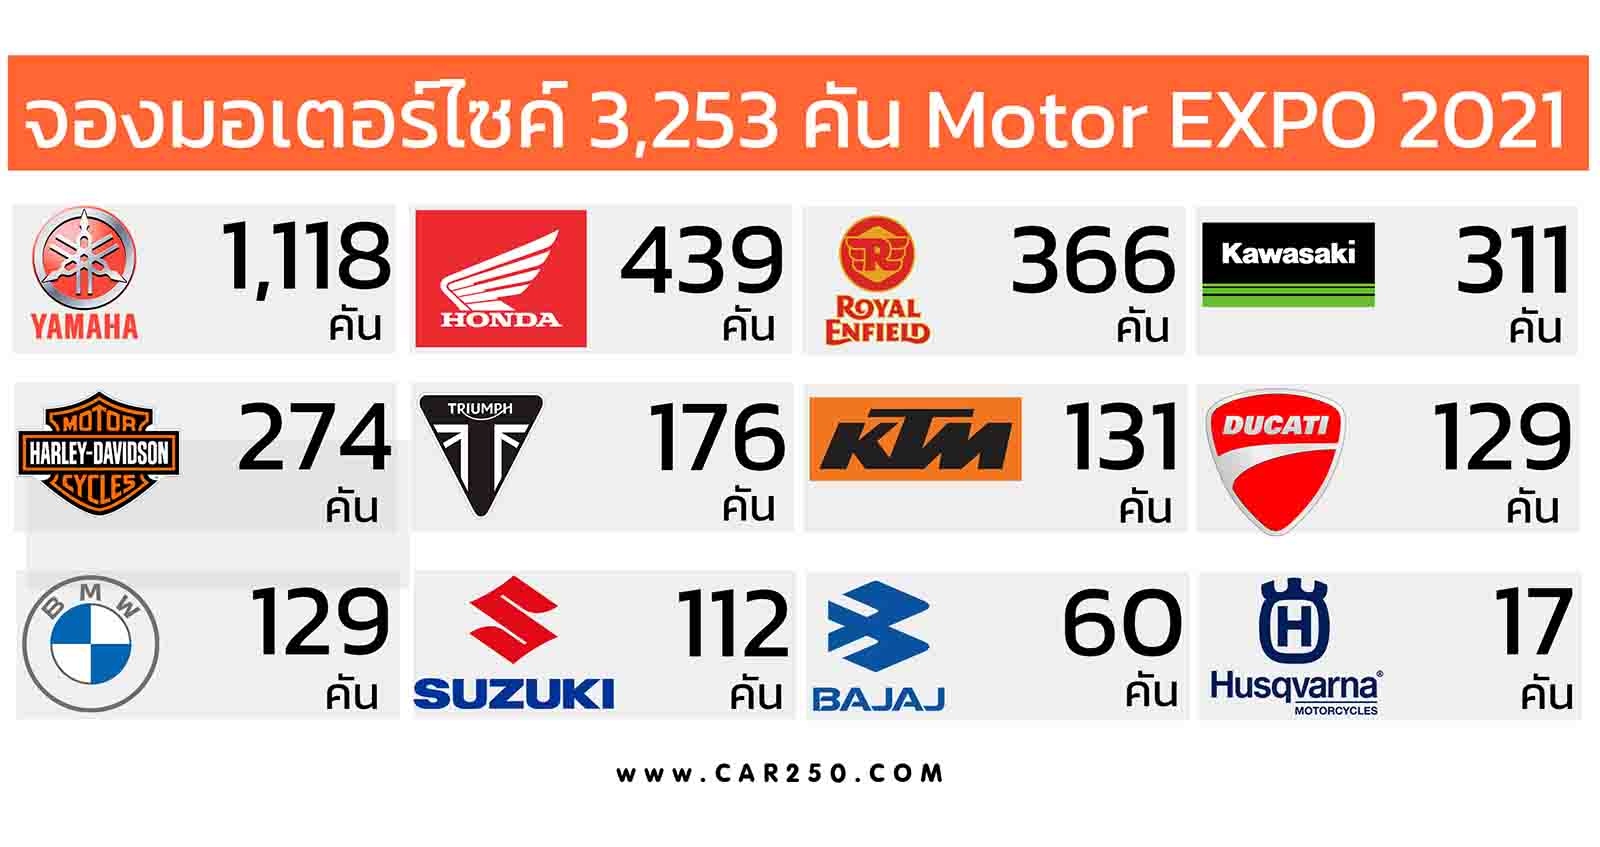 ยอดจองมอเตอร์ไซค์ รวม 3,253 คัน MOTOR EXPO 2021